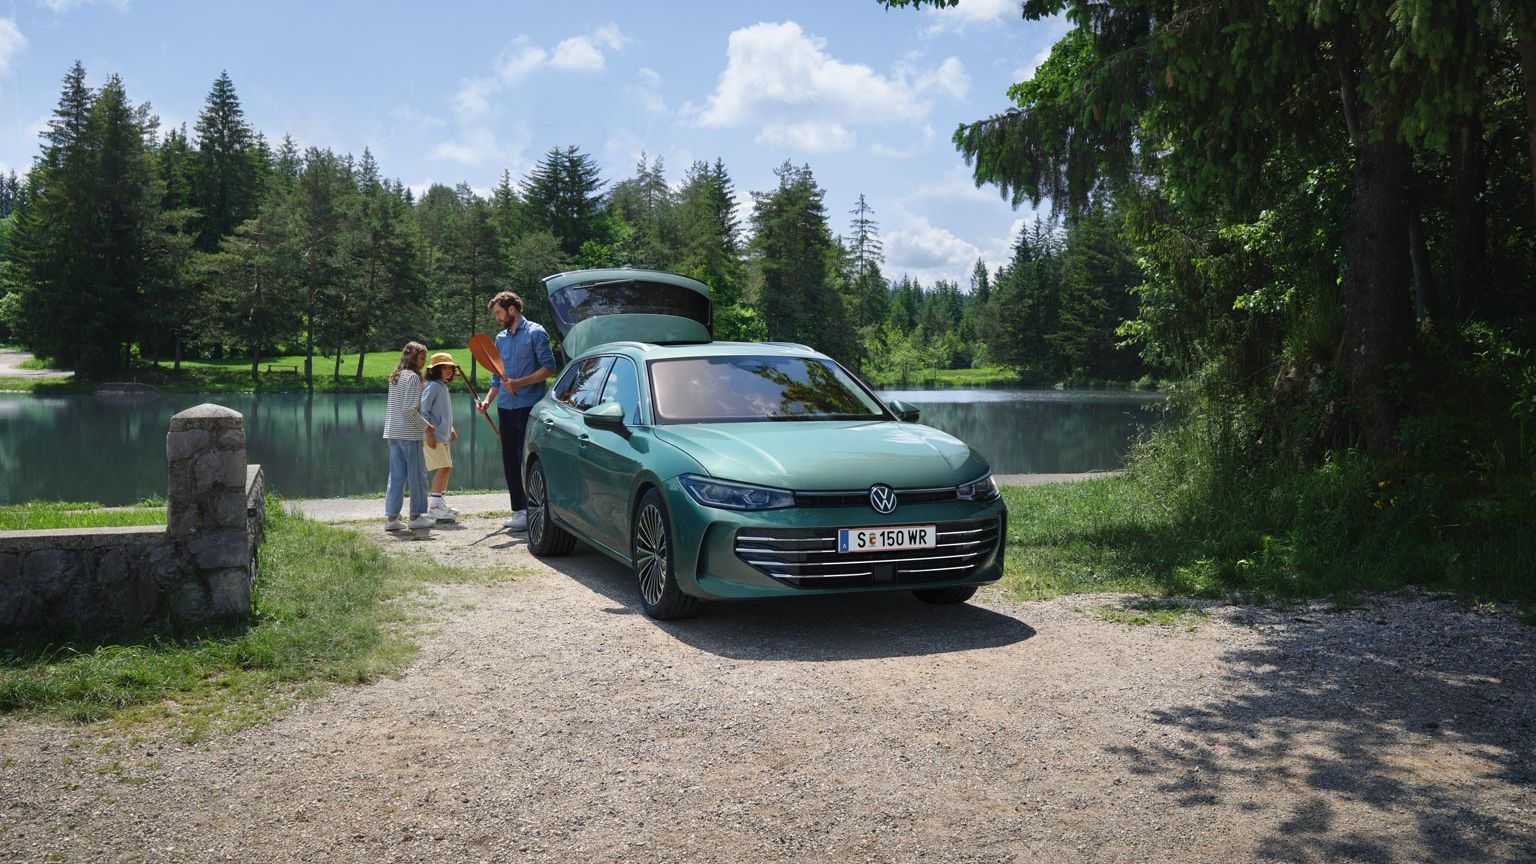 Der neue VW Passat in blaugrün parkt an einem Badesee mit geöffnetem Kofferraum. Ein Mann verteilt Freitzeitspielzeug an zwei Kinder.